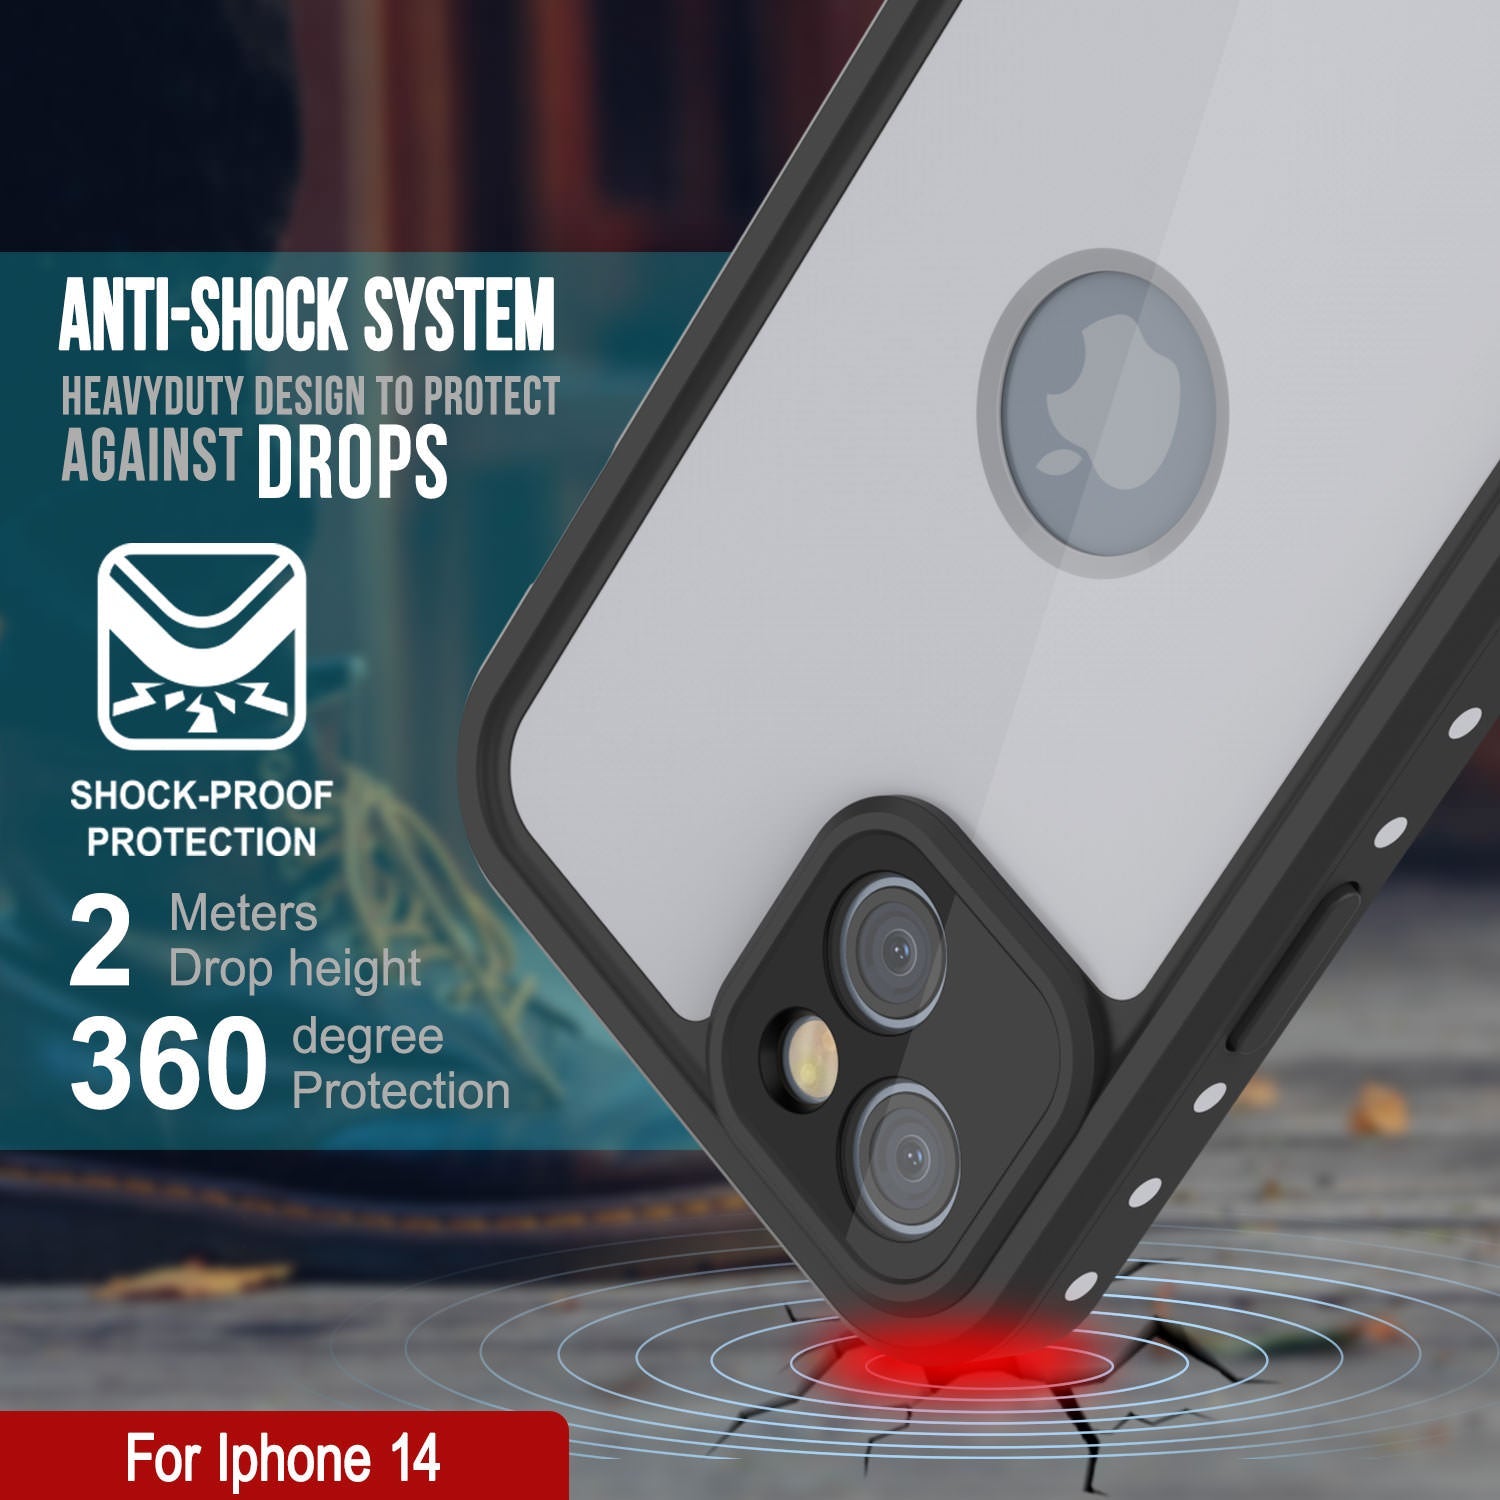 iPhone 14 Waterproof IP68 Case, Punkcase [White] [StudStar Series] [Slim Fit] [Dirtproof]